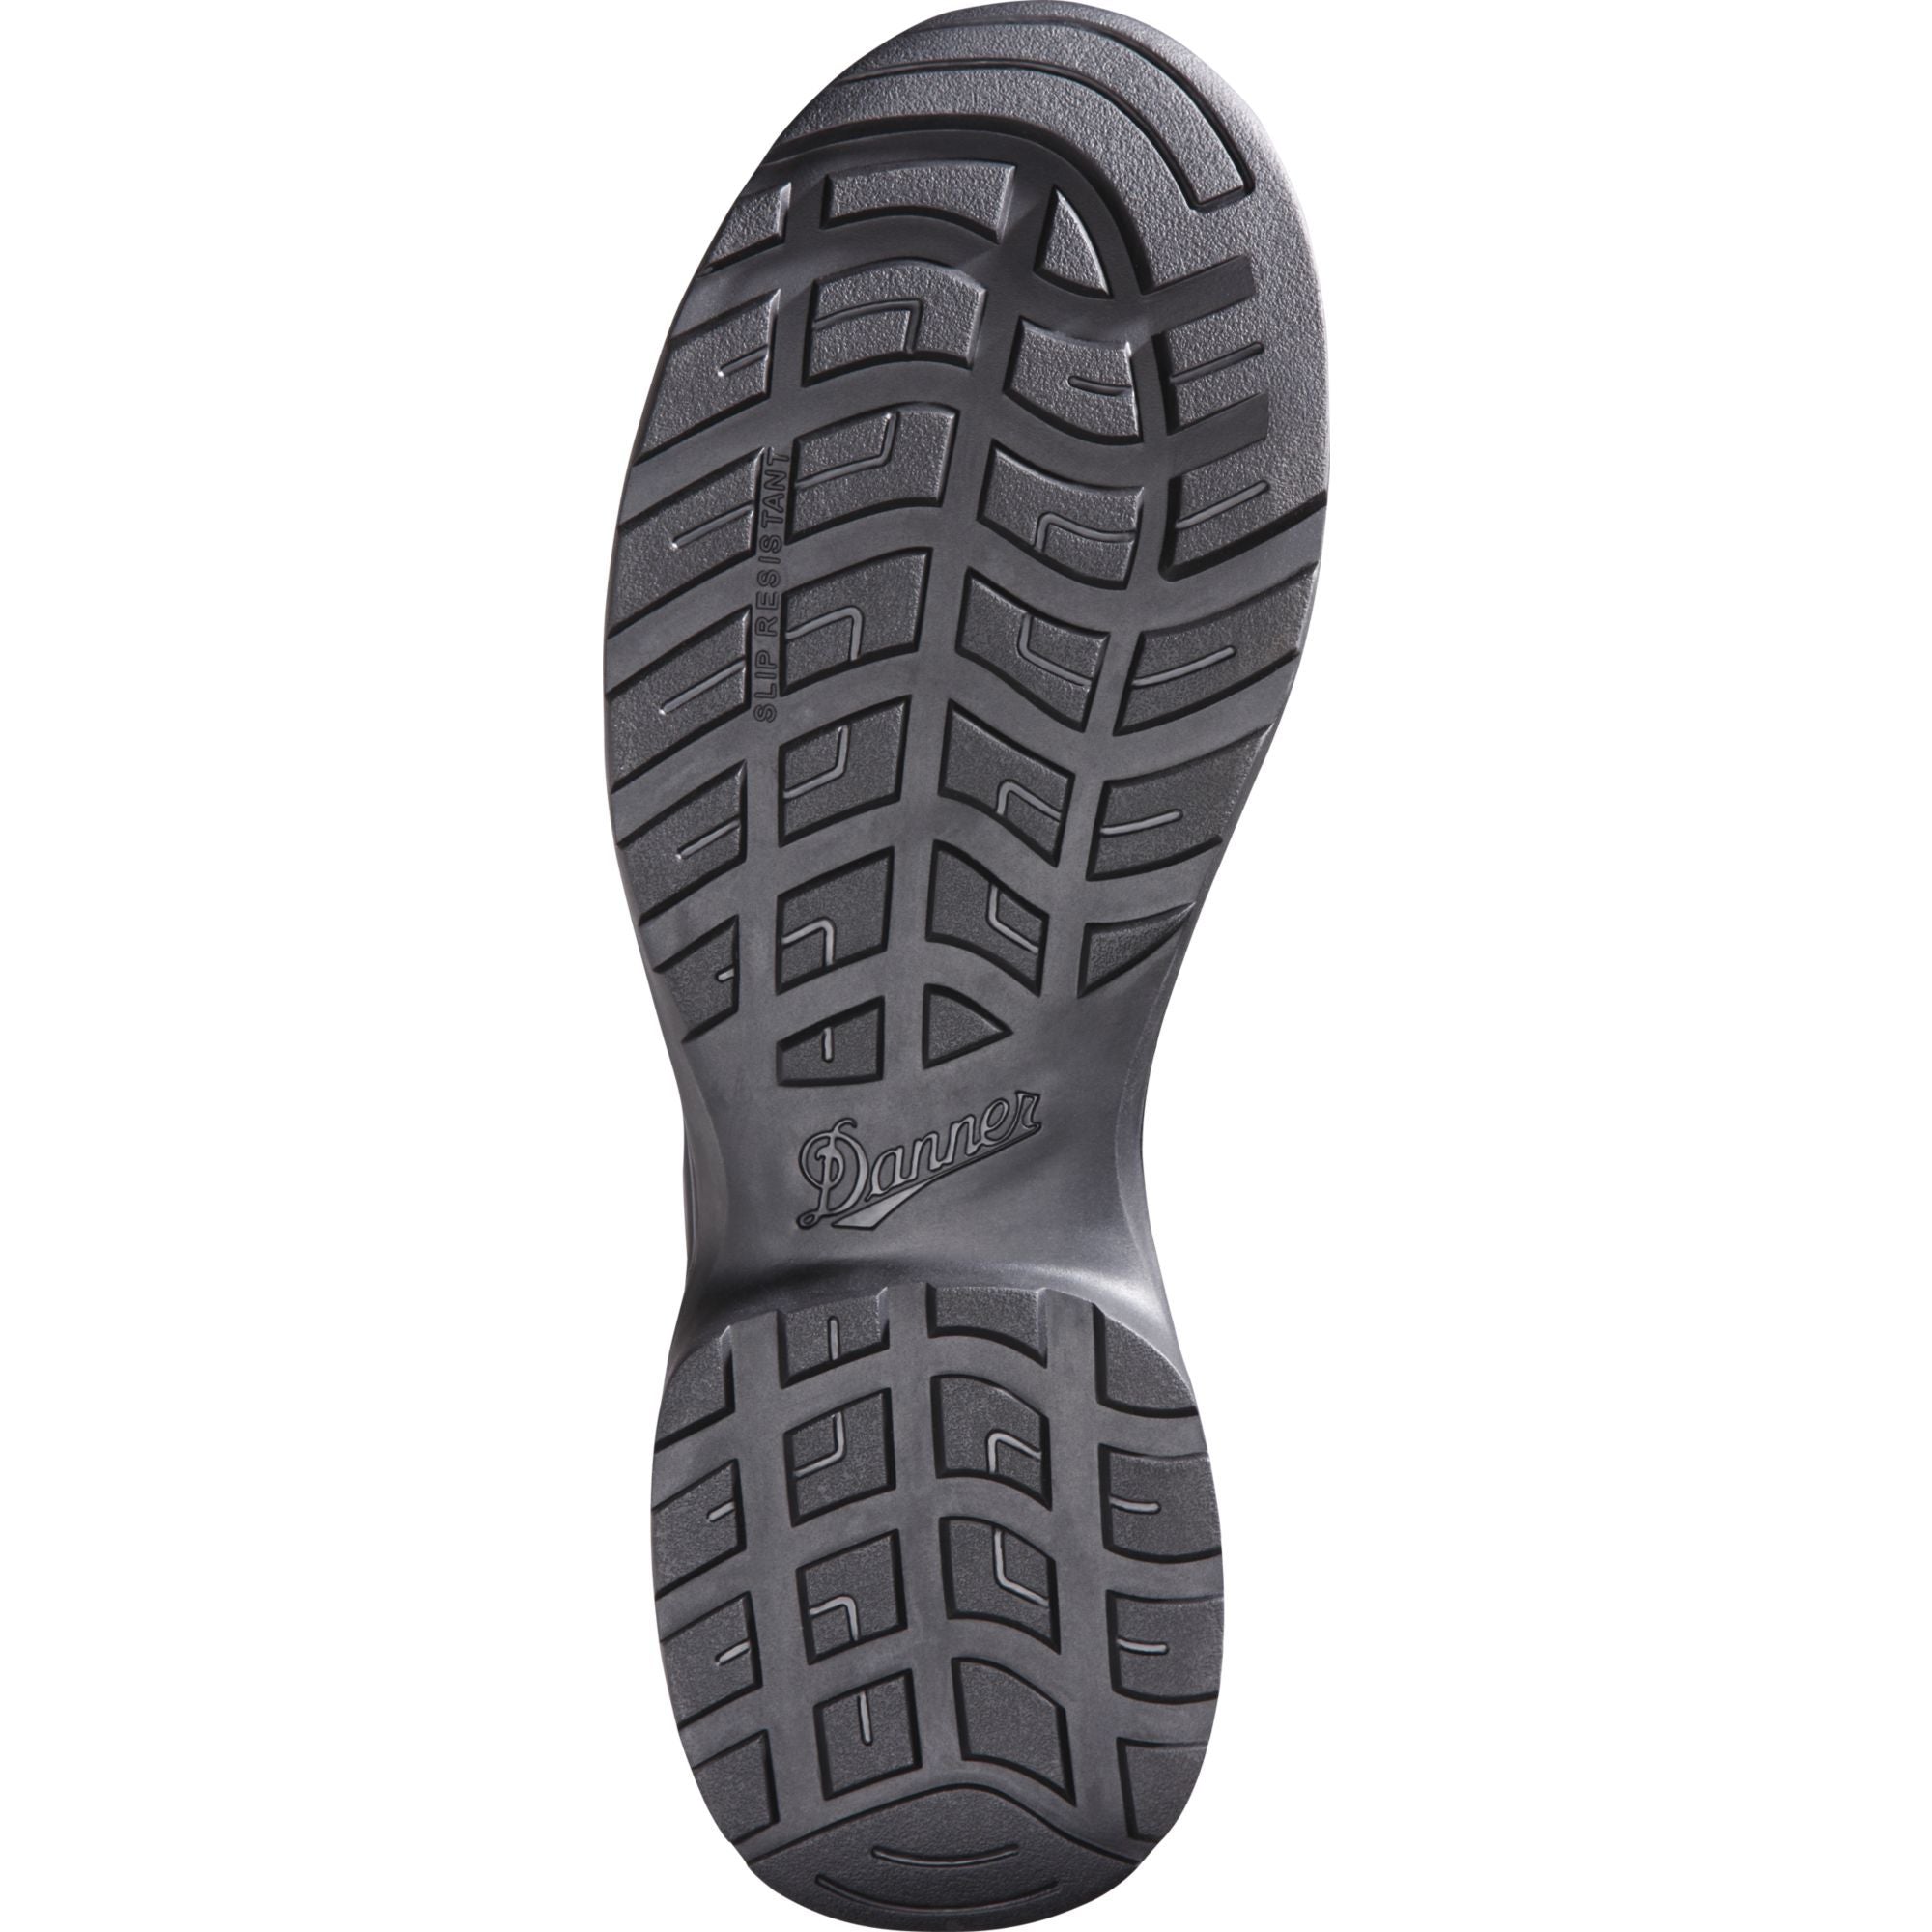 Danner Men's Kinetic 8" Side Zip Waterproof Duty Boot - Black - 28012  - Overlook Boots